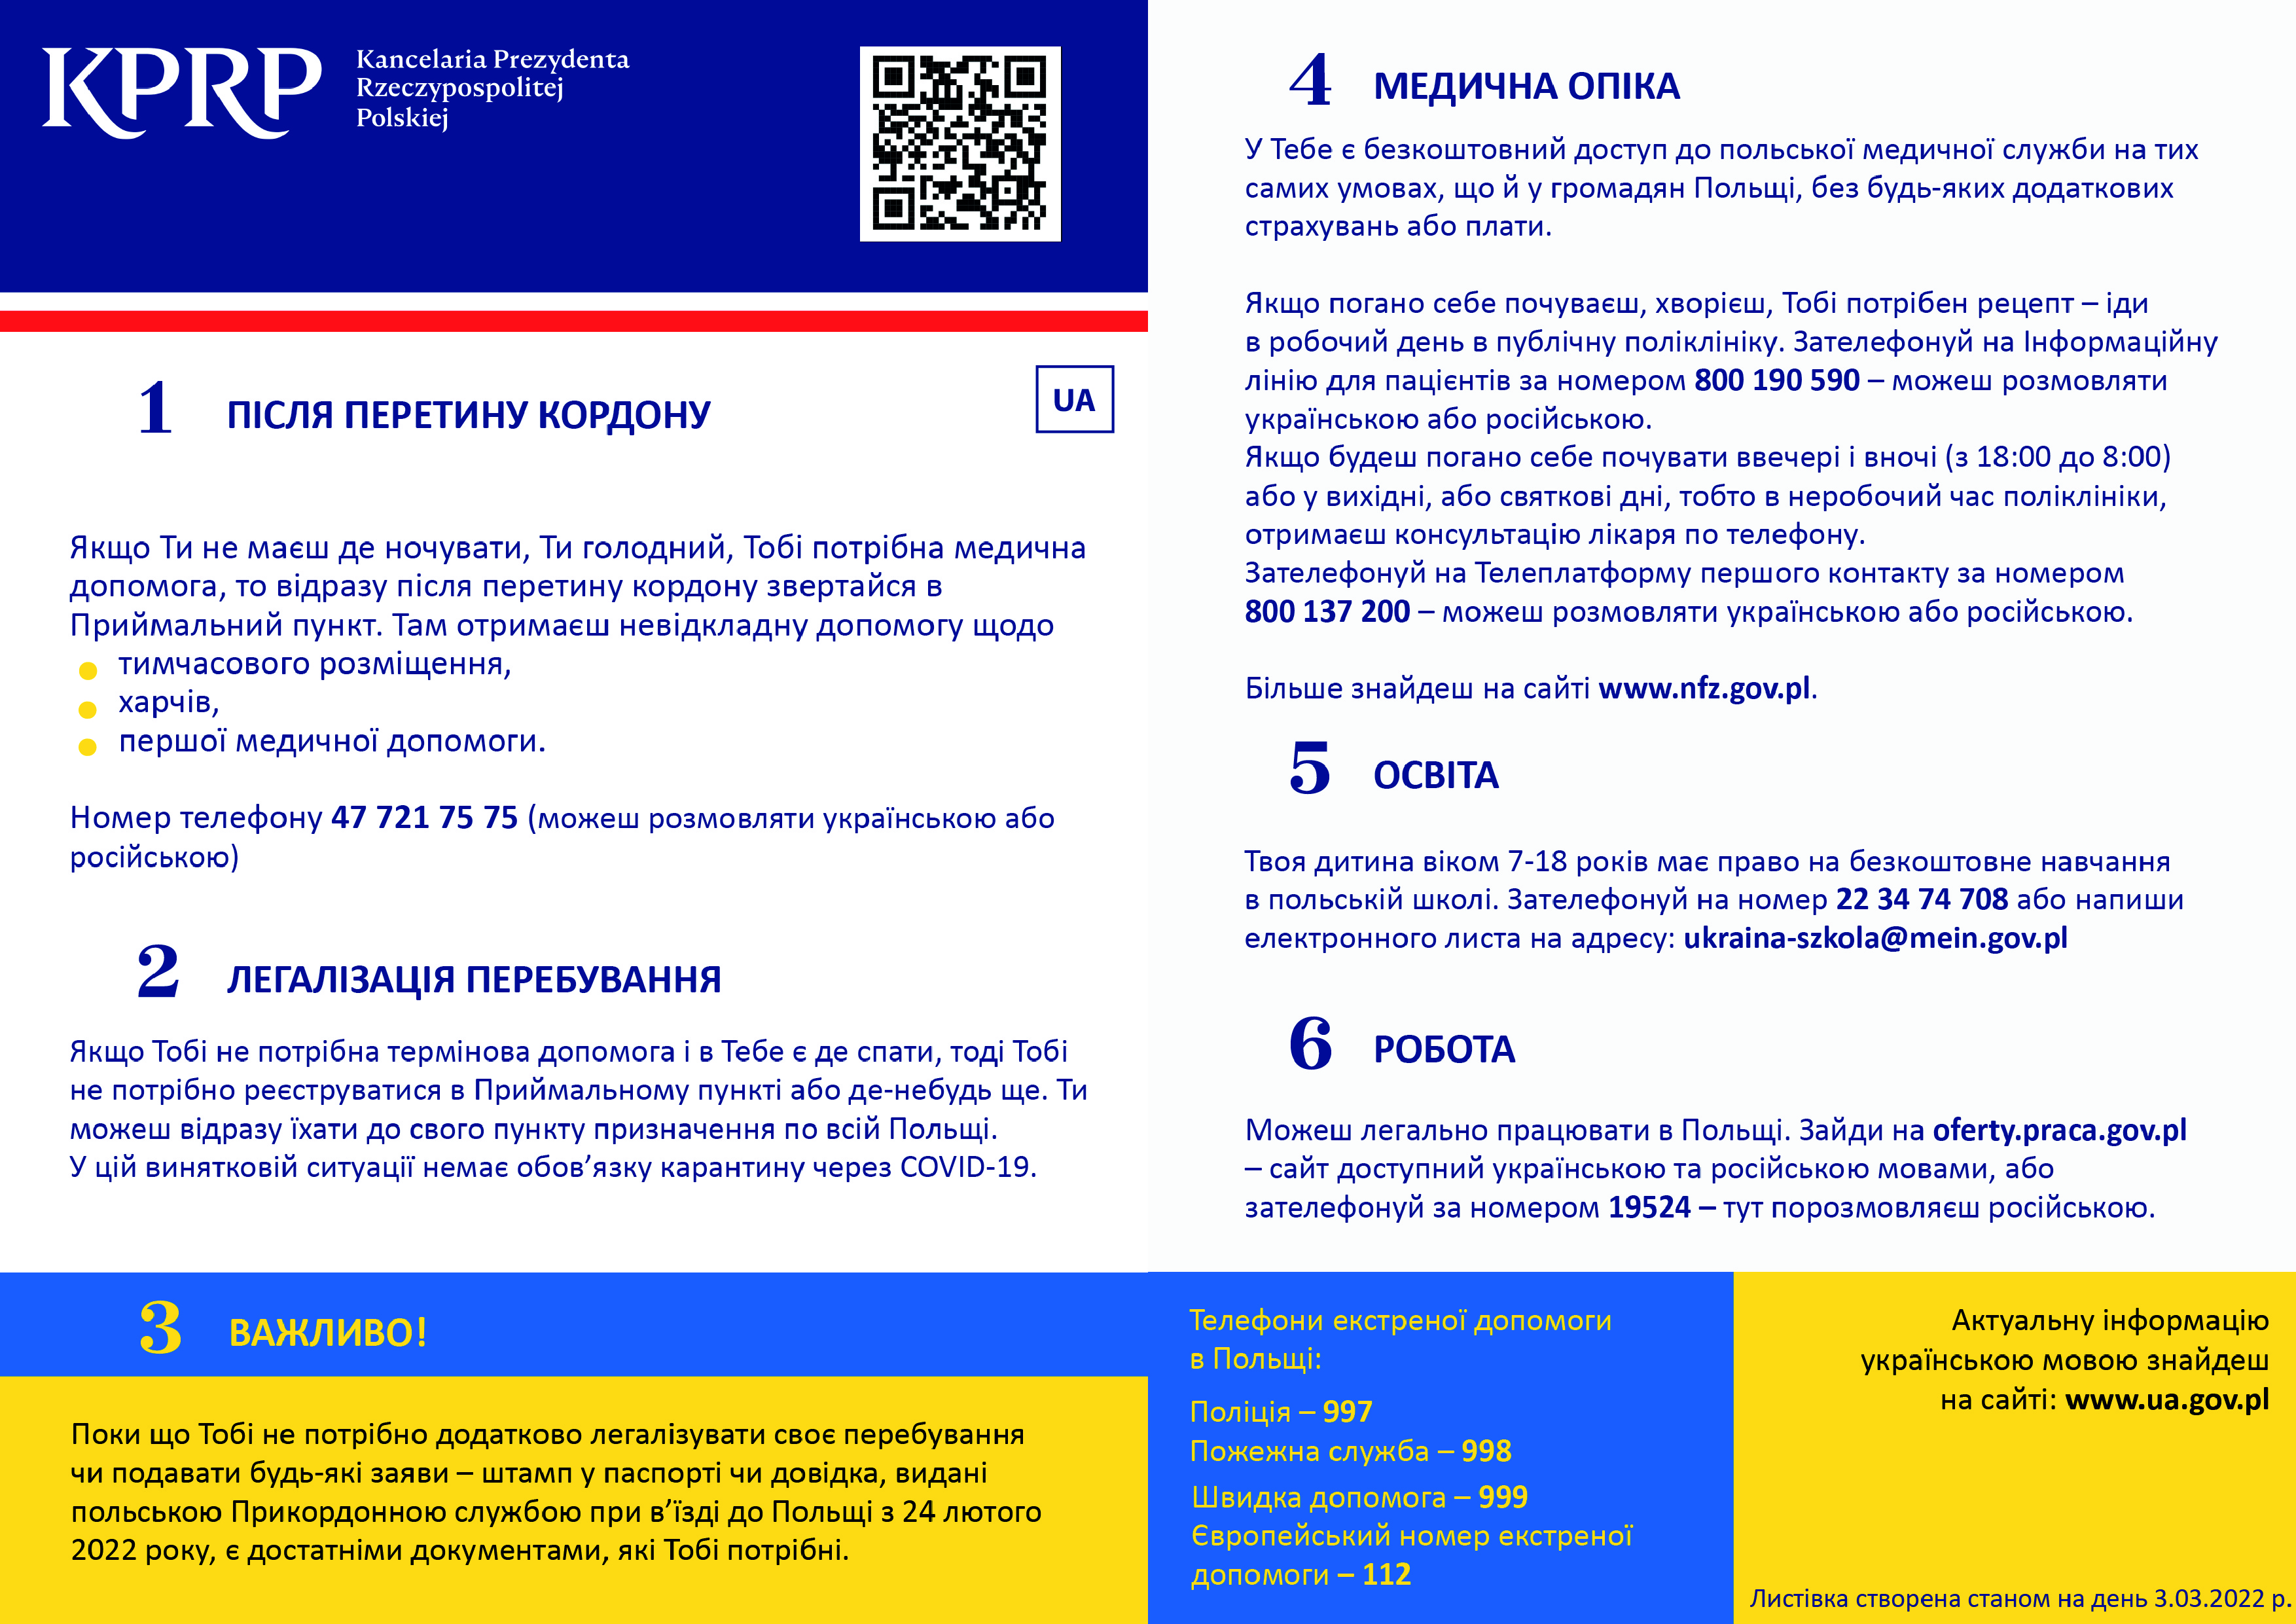 Informacja dla uchodźców z Ukrainy.